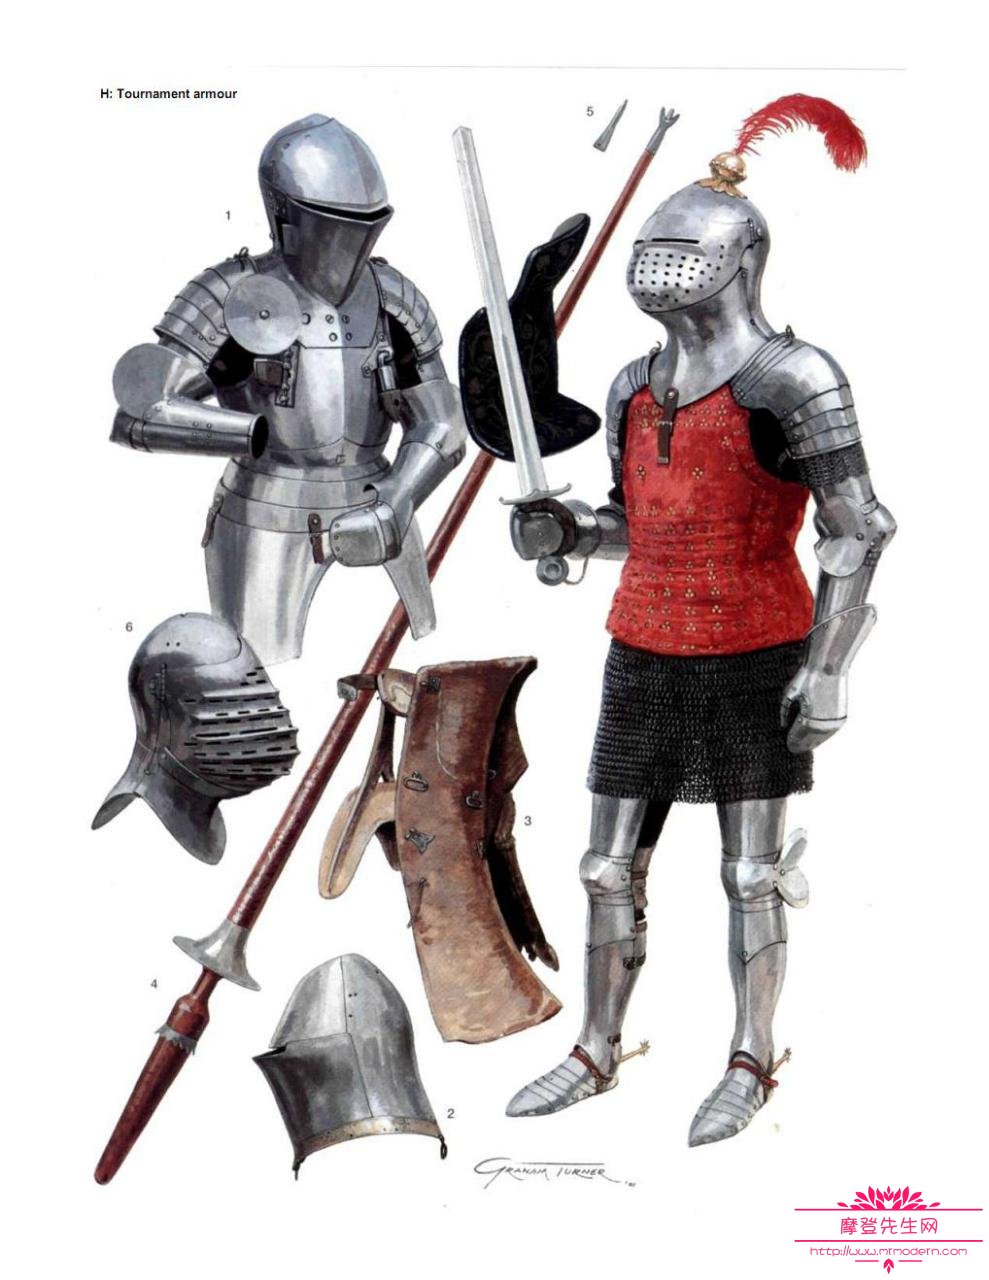 中世纪真实的盔甲设计图，中世纪的骑士精神指的是什么？